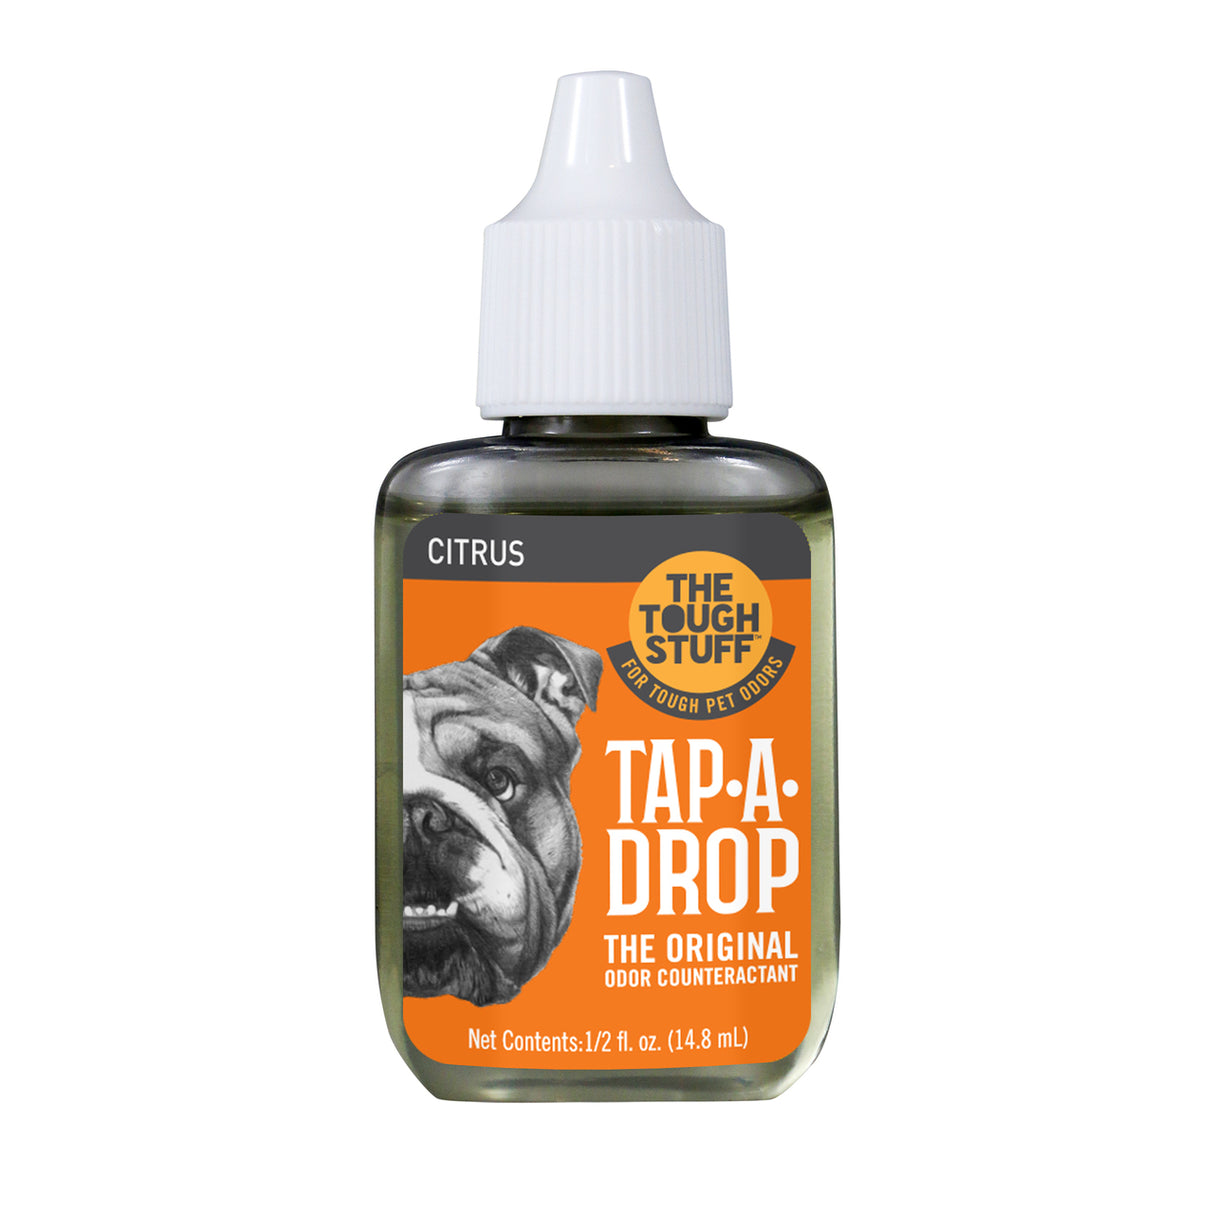 0.5 oz Nilodor Tap-A-Drop Air Freshener Citrus Scent